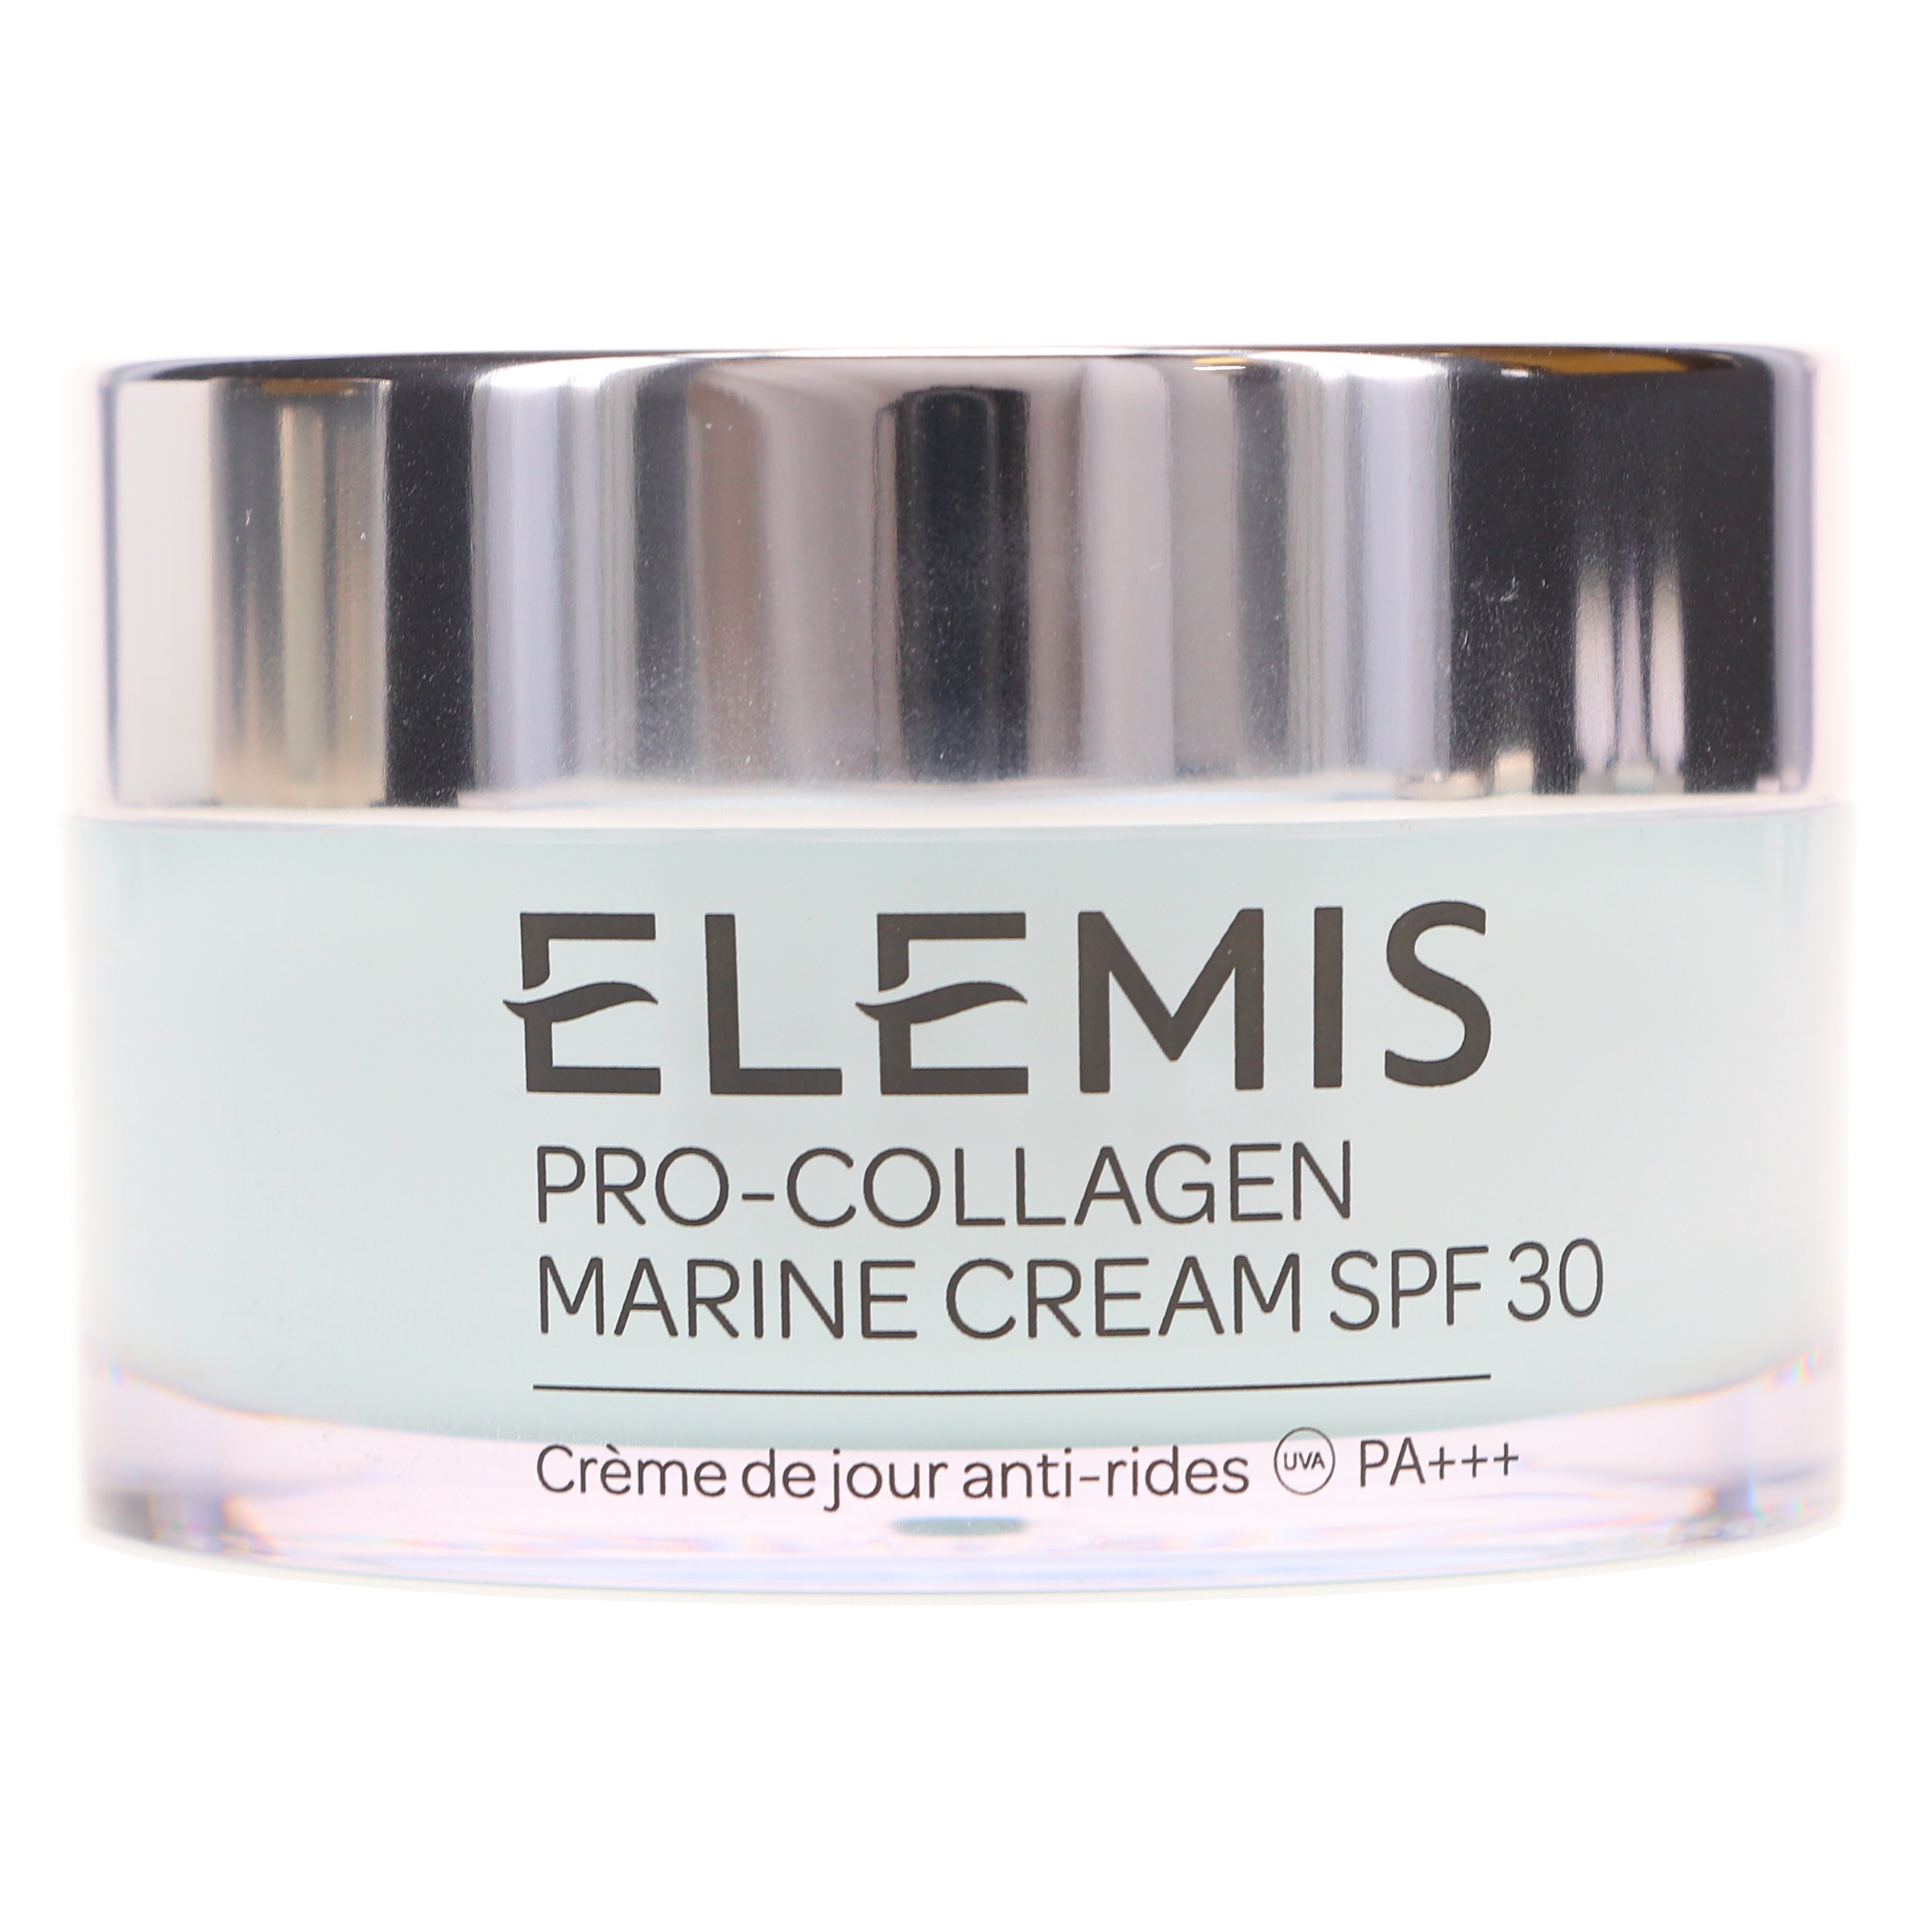 Elemis Pro-Collagen Marine Face Cream, SPF 30, 1.6 fl oz - image 2 of 3